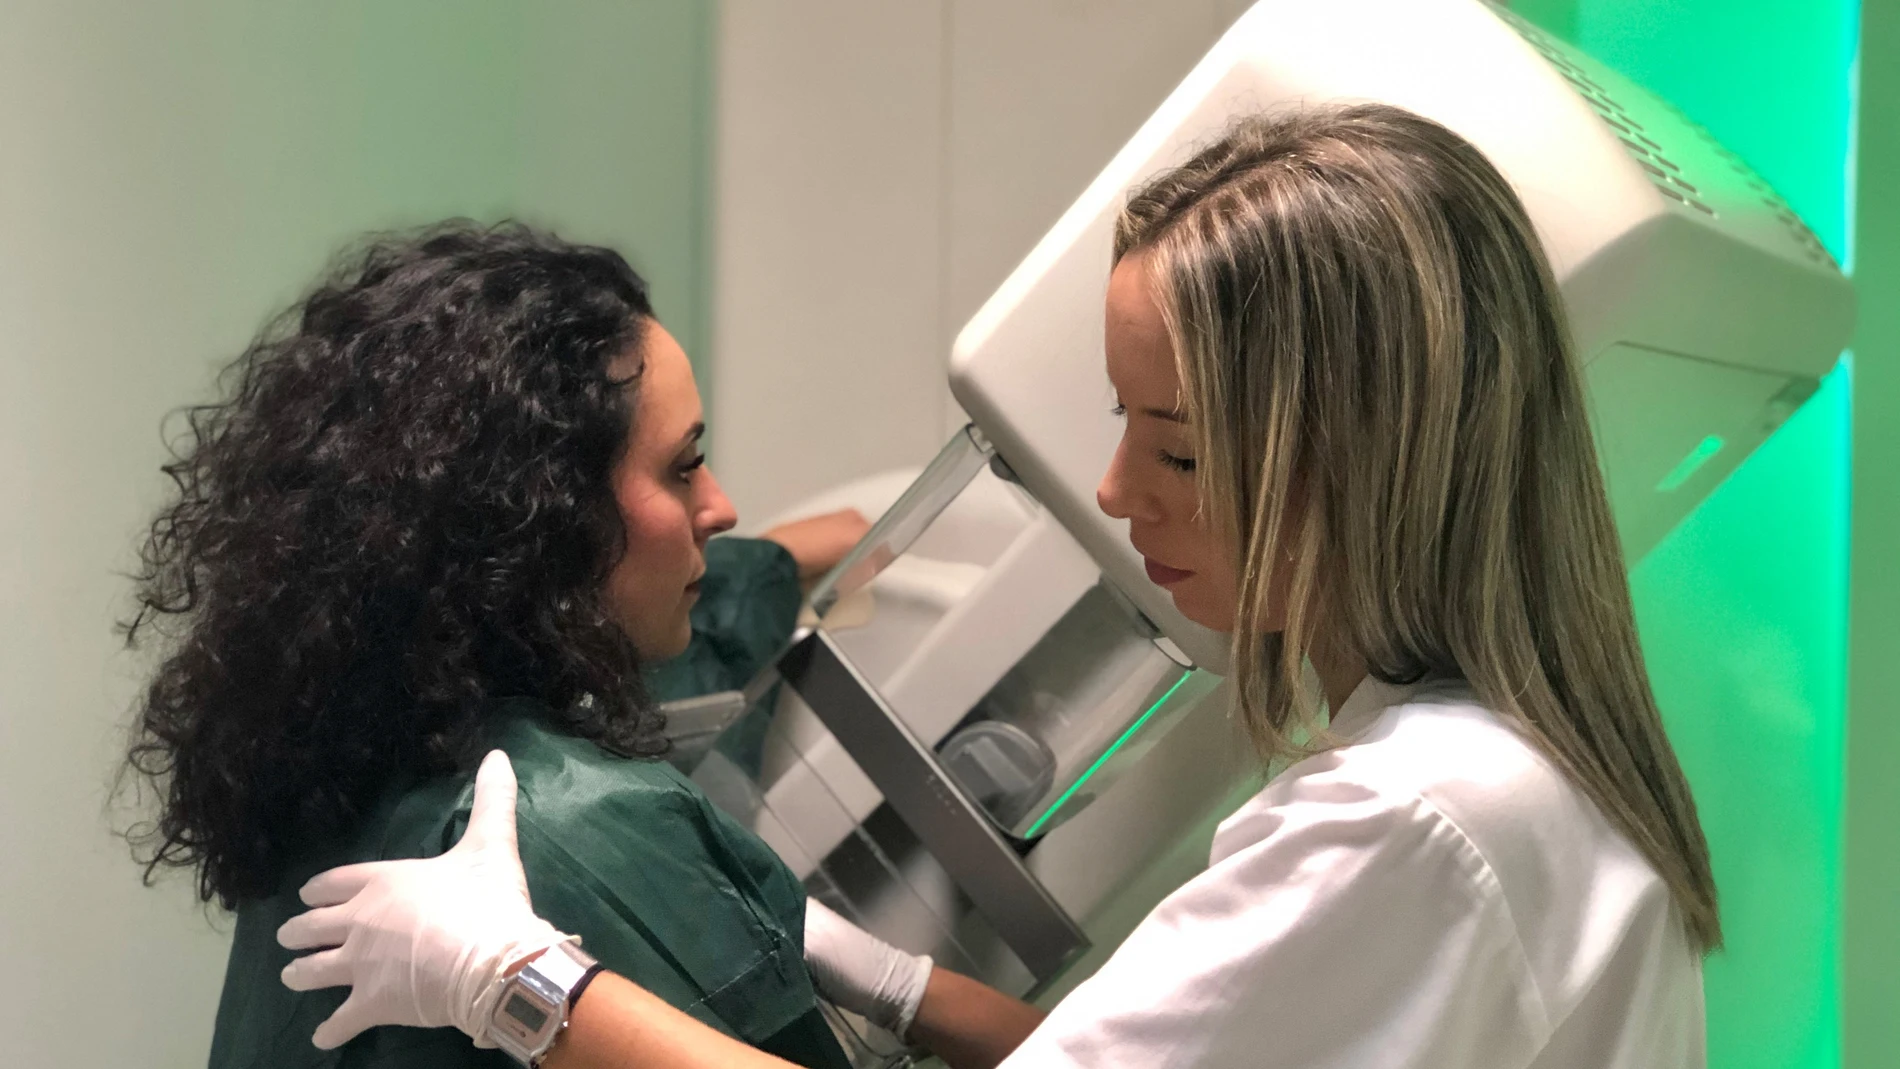 Una especialista médica del hospital Quirónsalud Infanta Luisa realiza una mamografía a una paciente